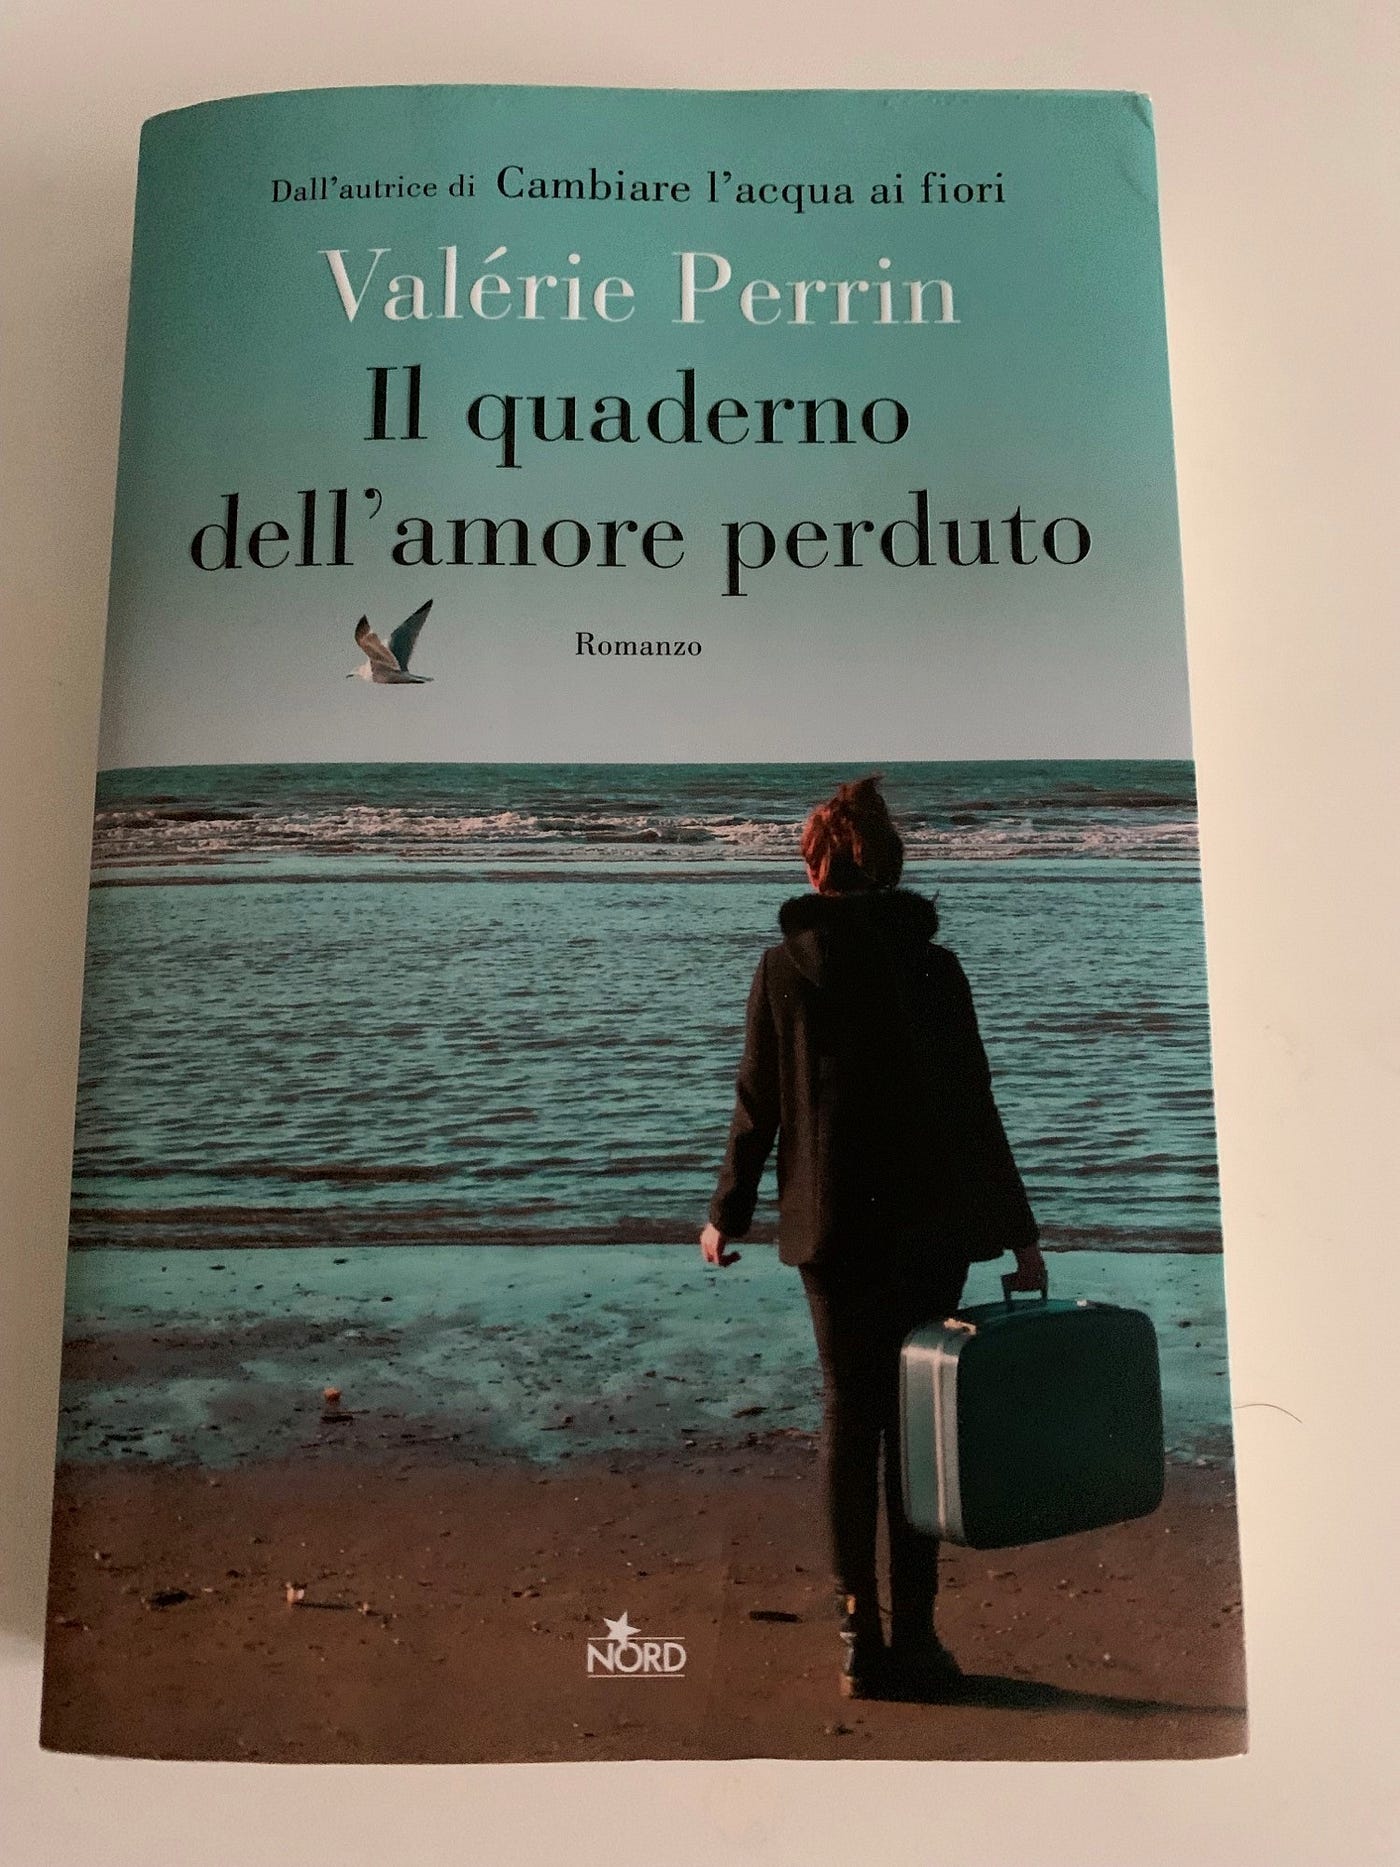 My Selection — Il Quaderno Dell'Amore Perduto